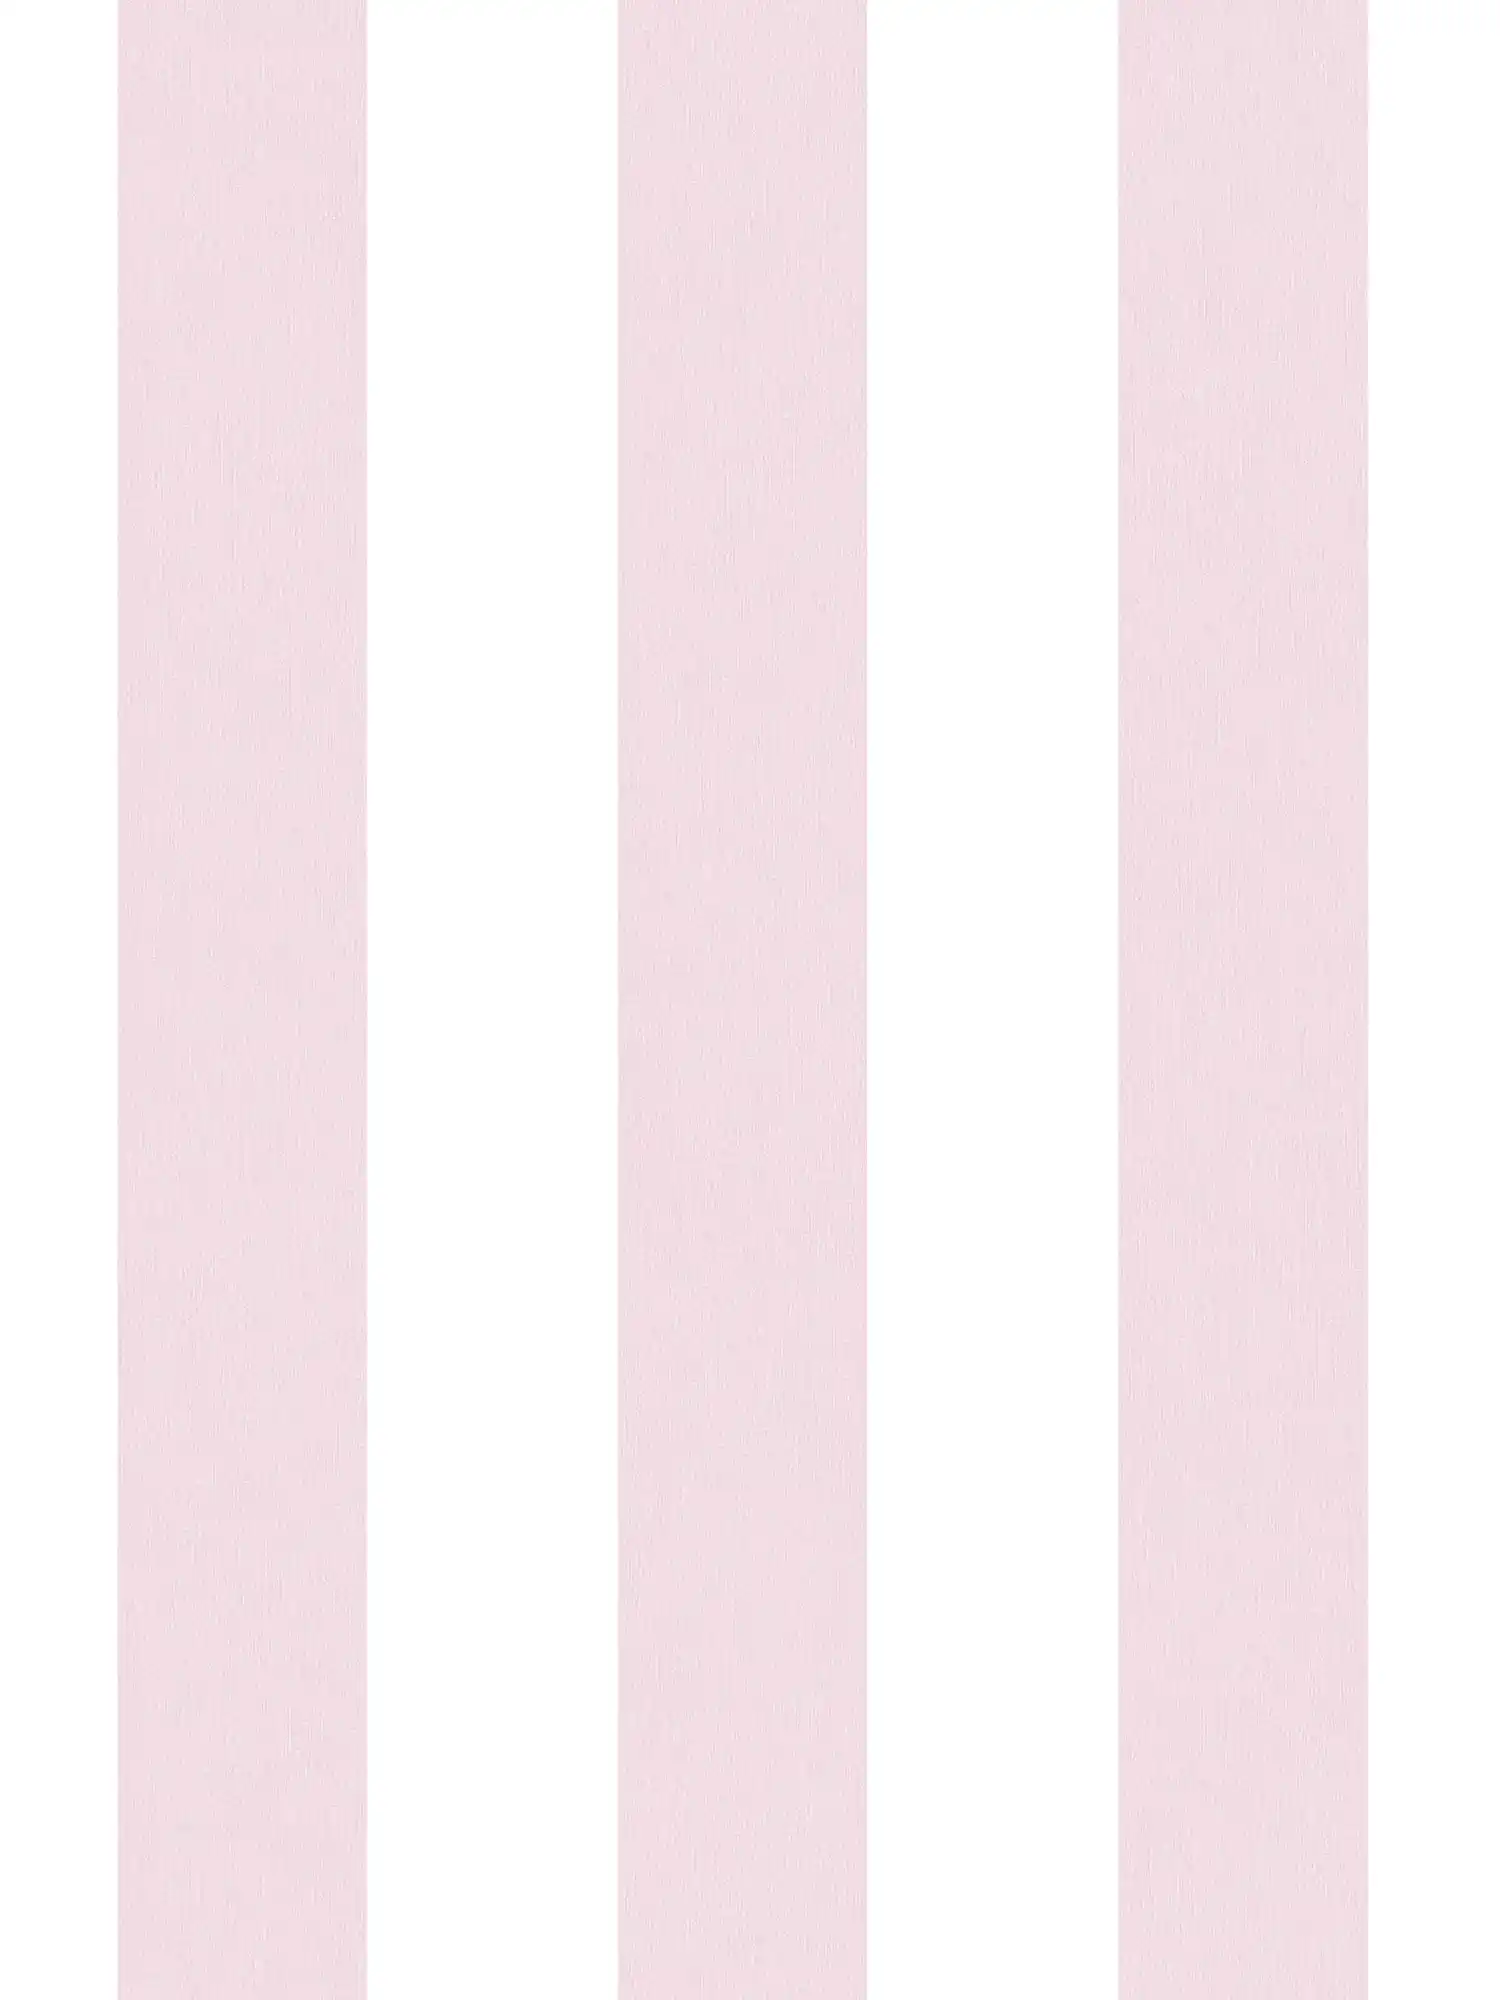 Kinderkamer meisjes behang strepen verticaal - roze, wit
